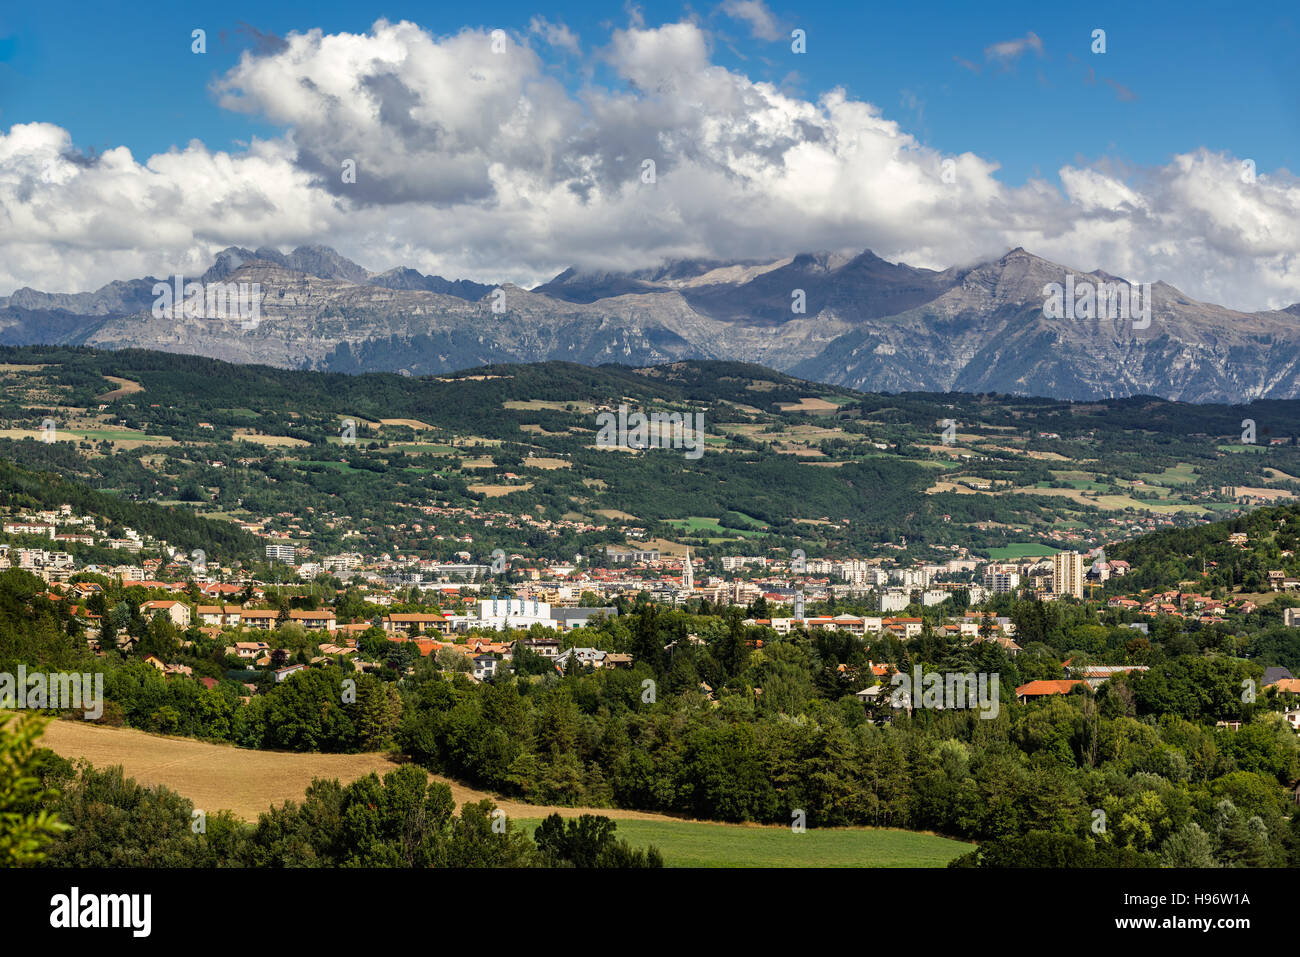 La ville de Gap dans les Hautes Alpes avec les montagnes environnantes et les pics en été. Alpes du Sud, France Banque D'Images